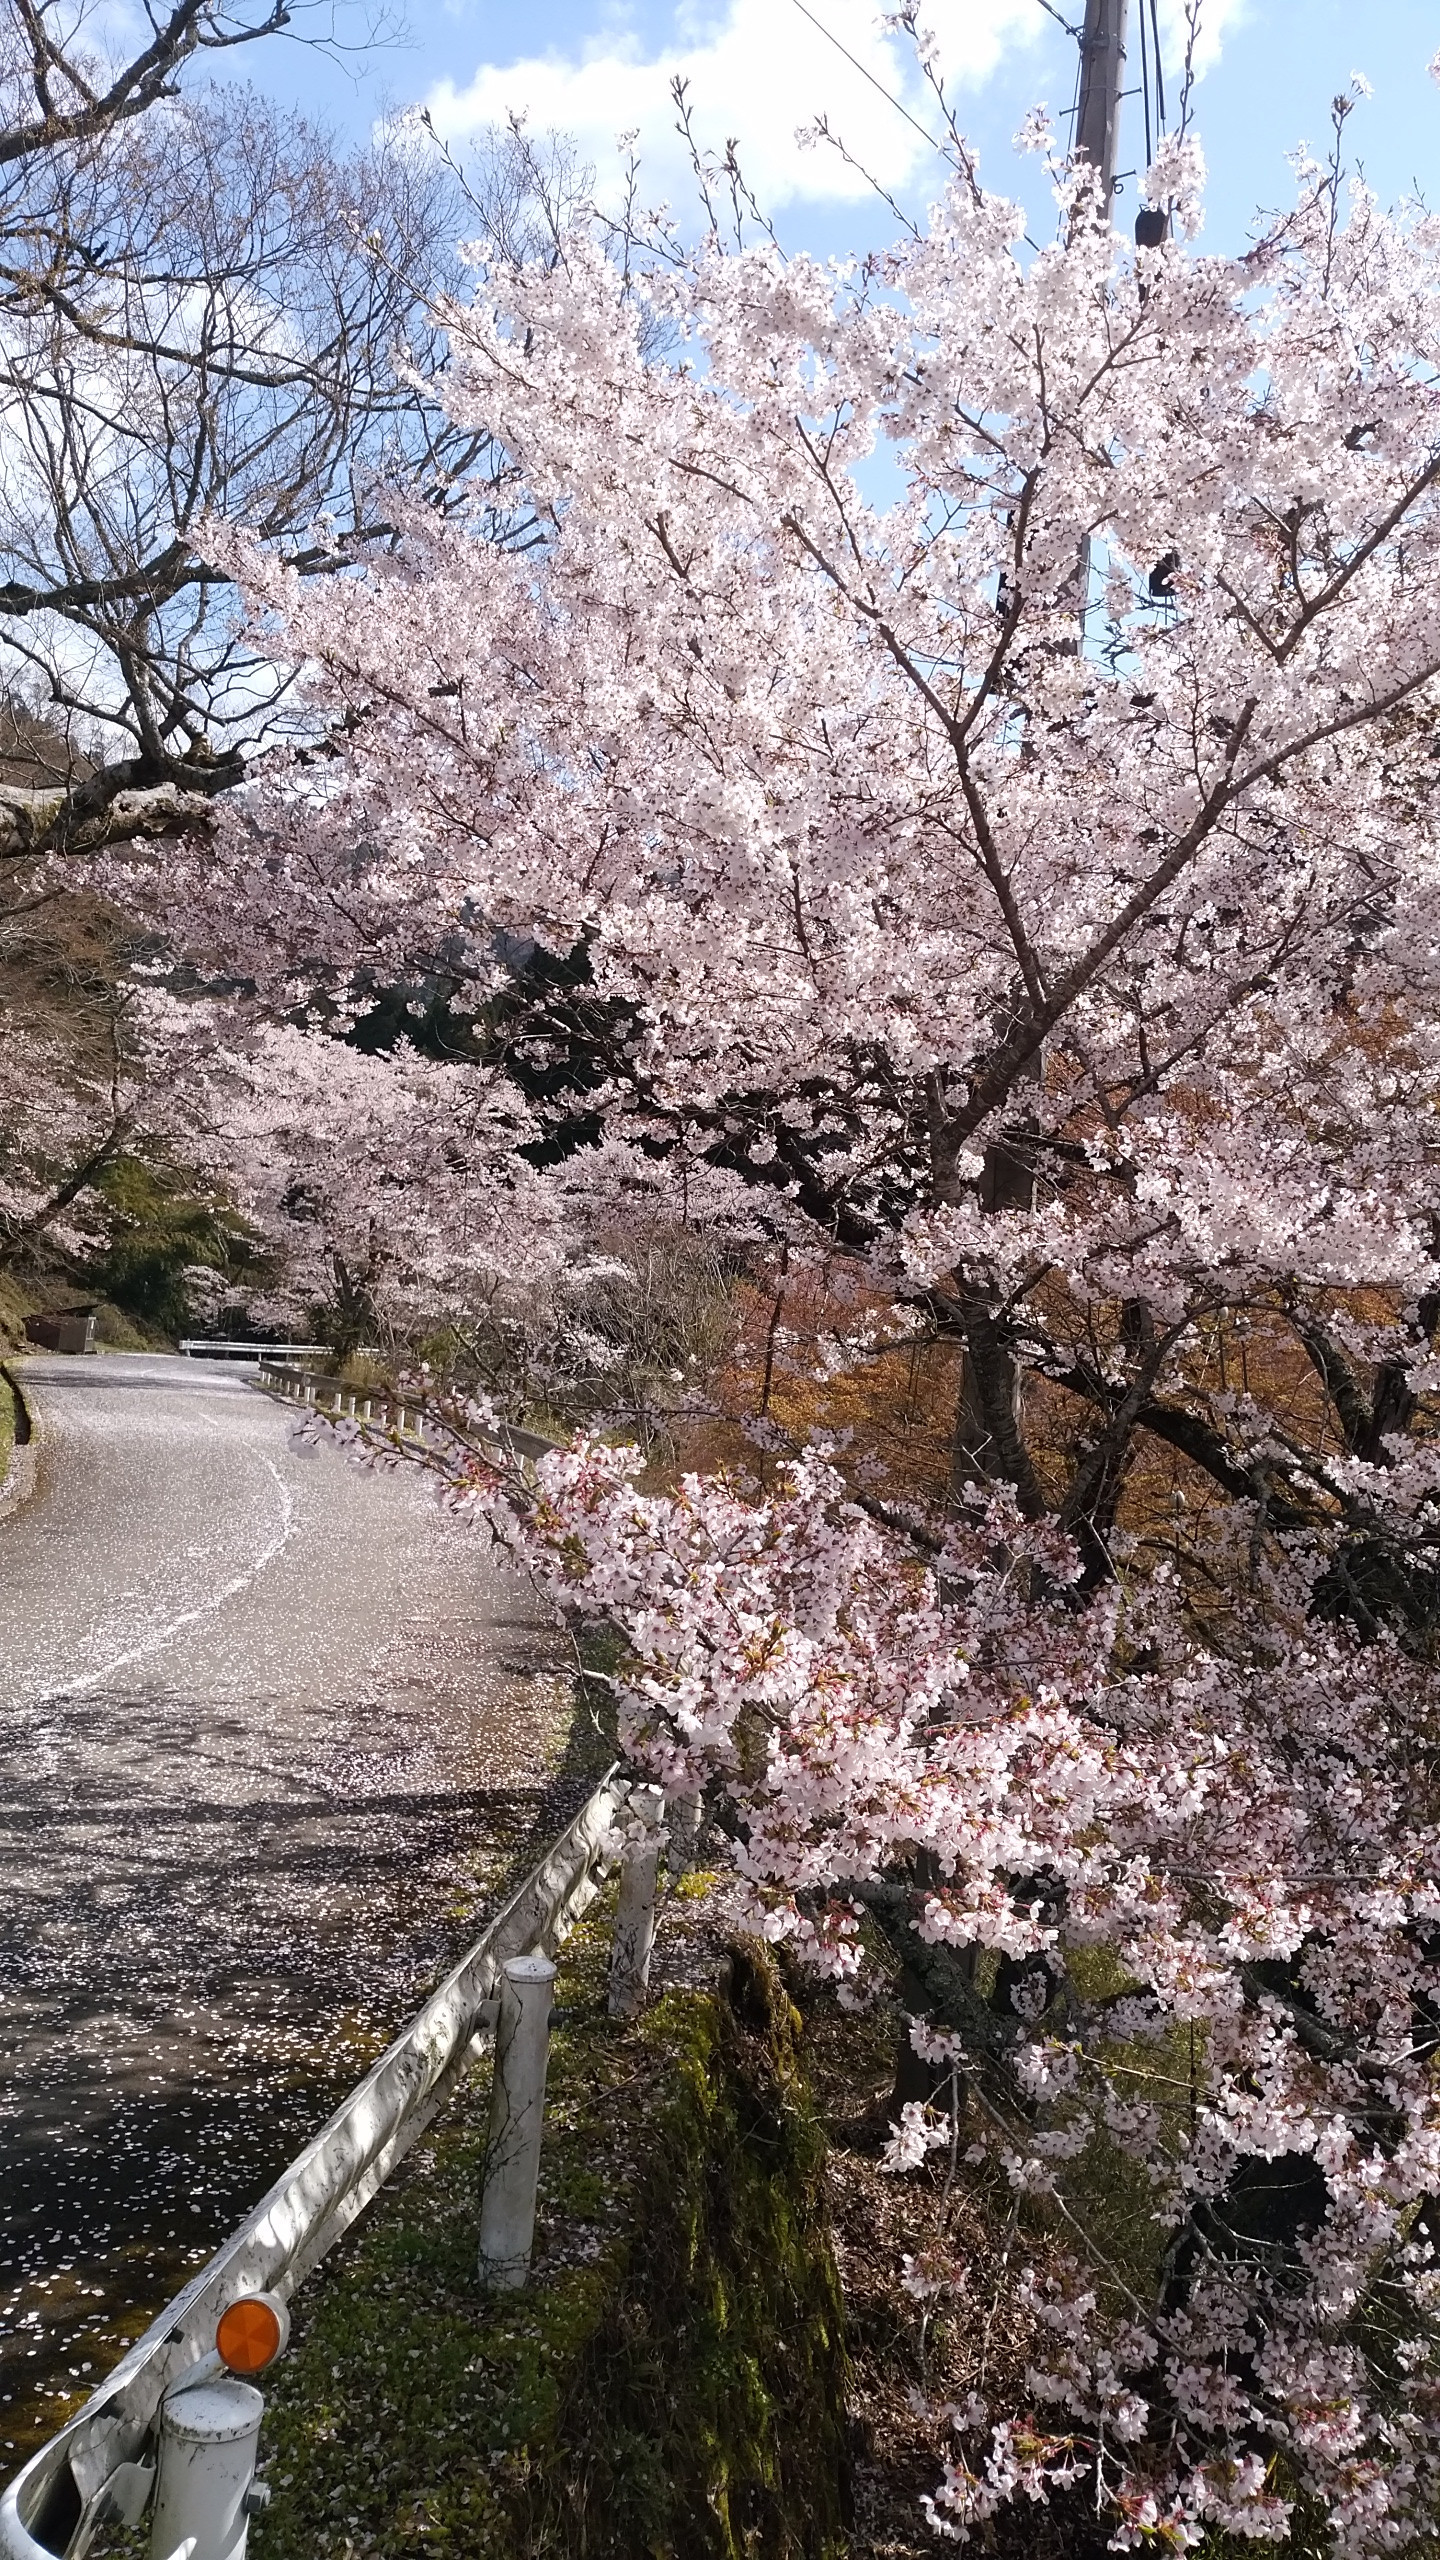 大野ダム道路沿いの桜